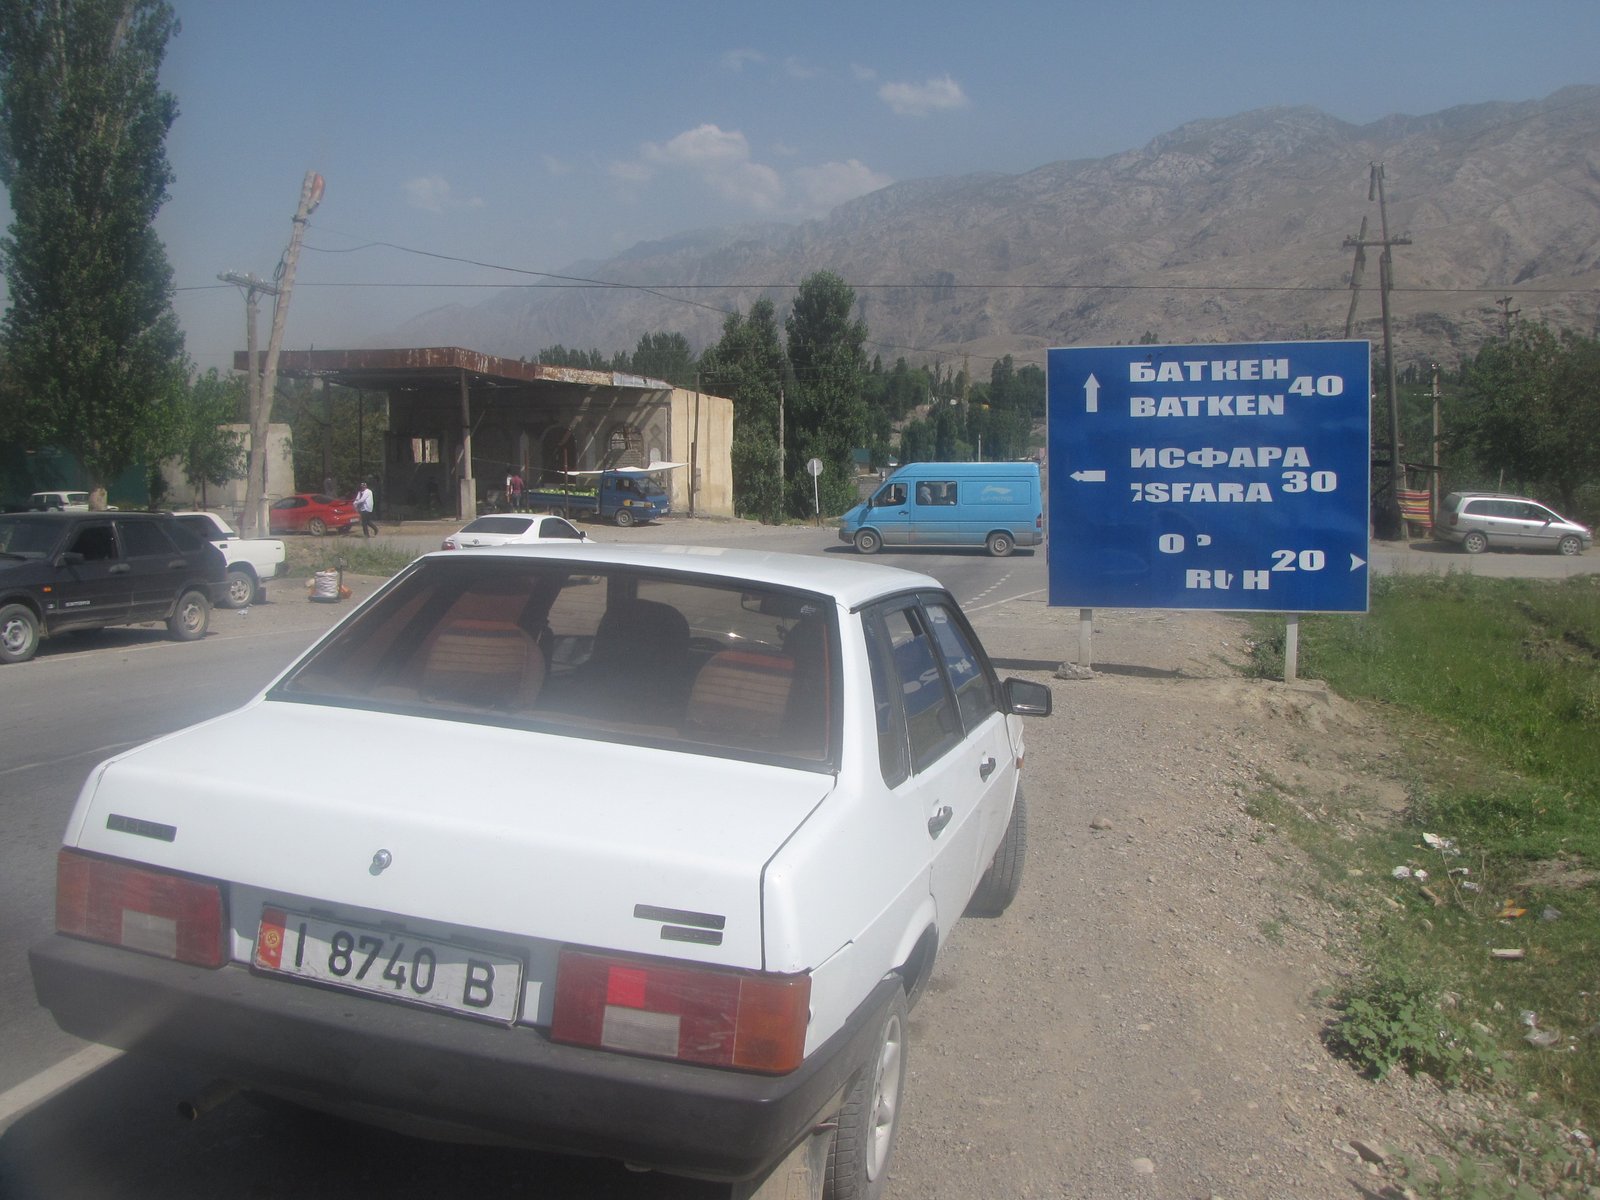 Авто исфаре. Исфара Таджикистан. Индекс Исфара. Исфара автовокзал. Герб Исфара.